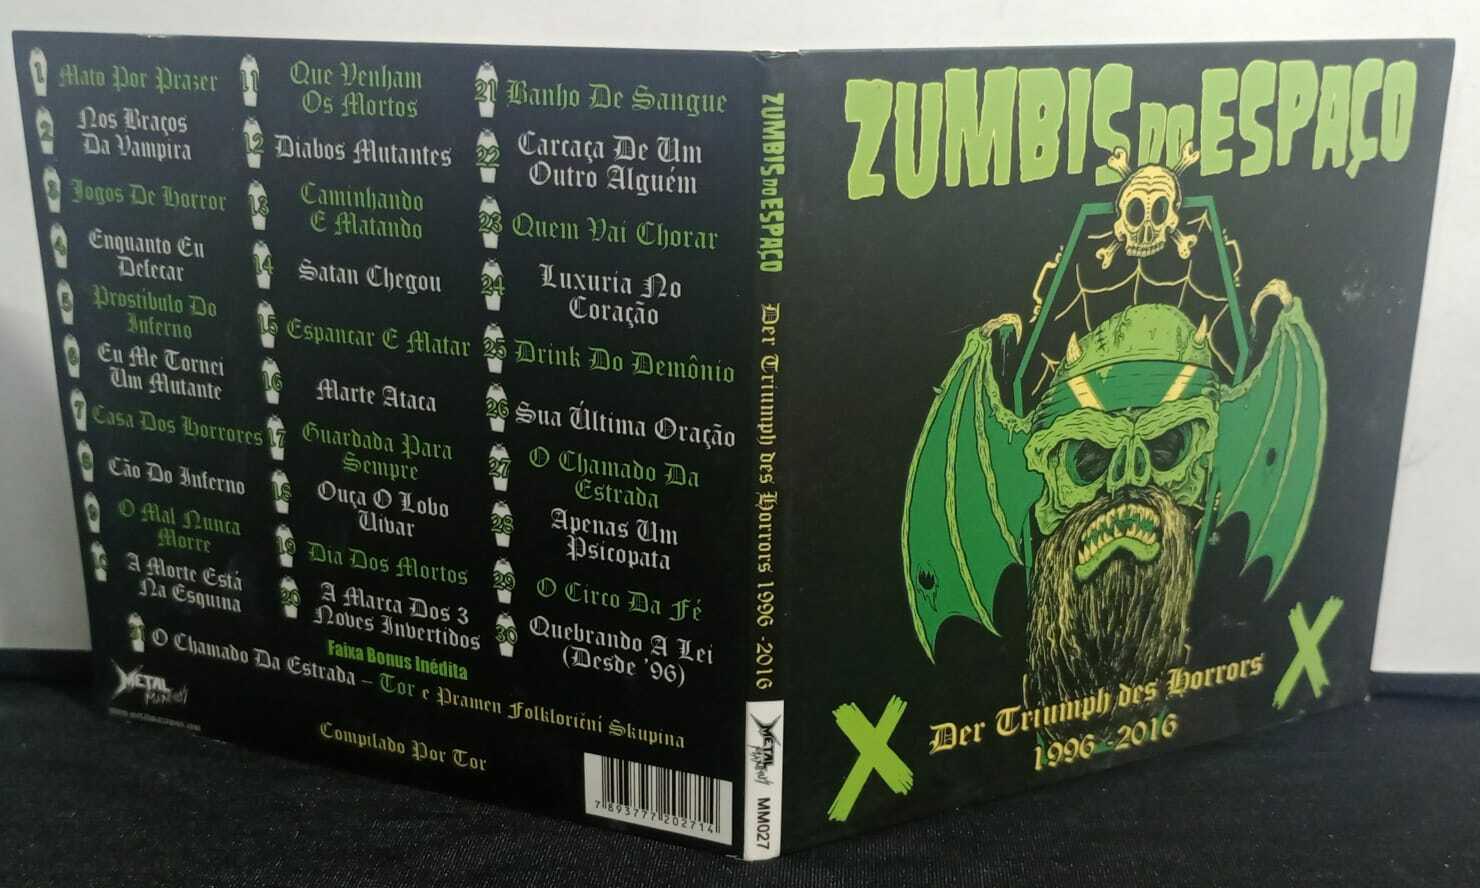 CD - Zumbis do Espaço - Der Triumph dos Horrors 1996-2016